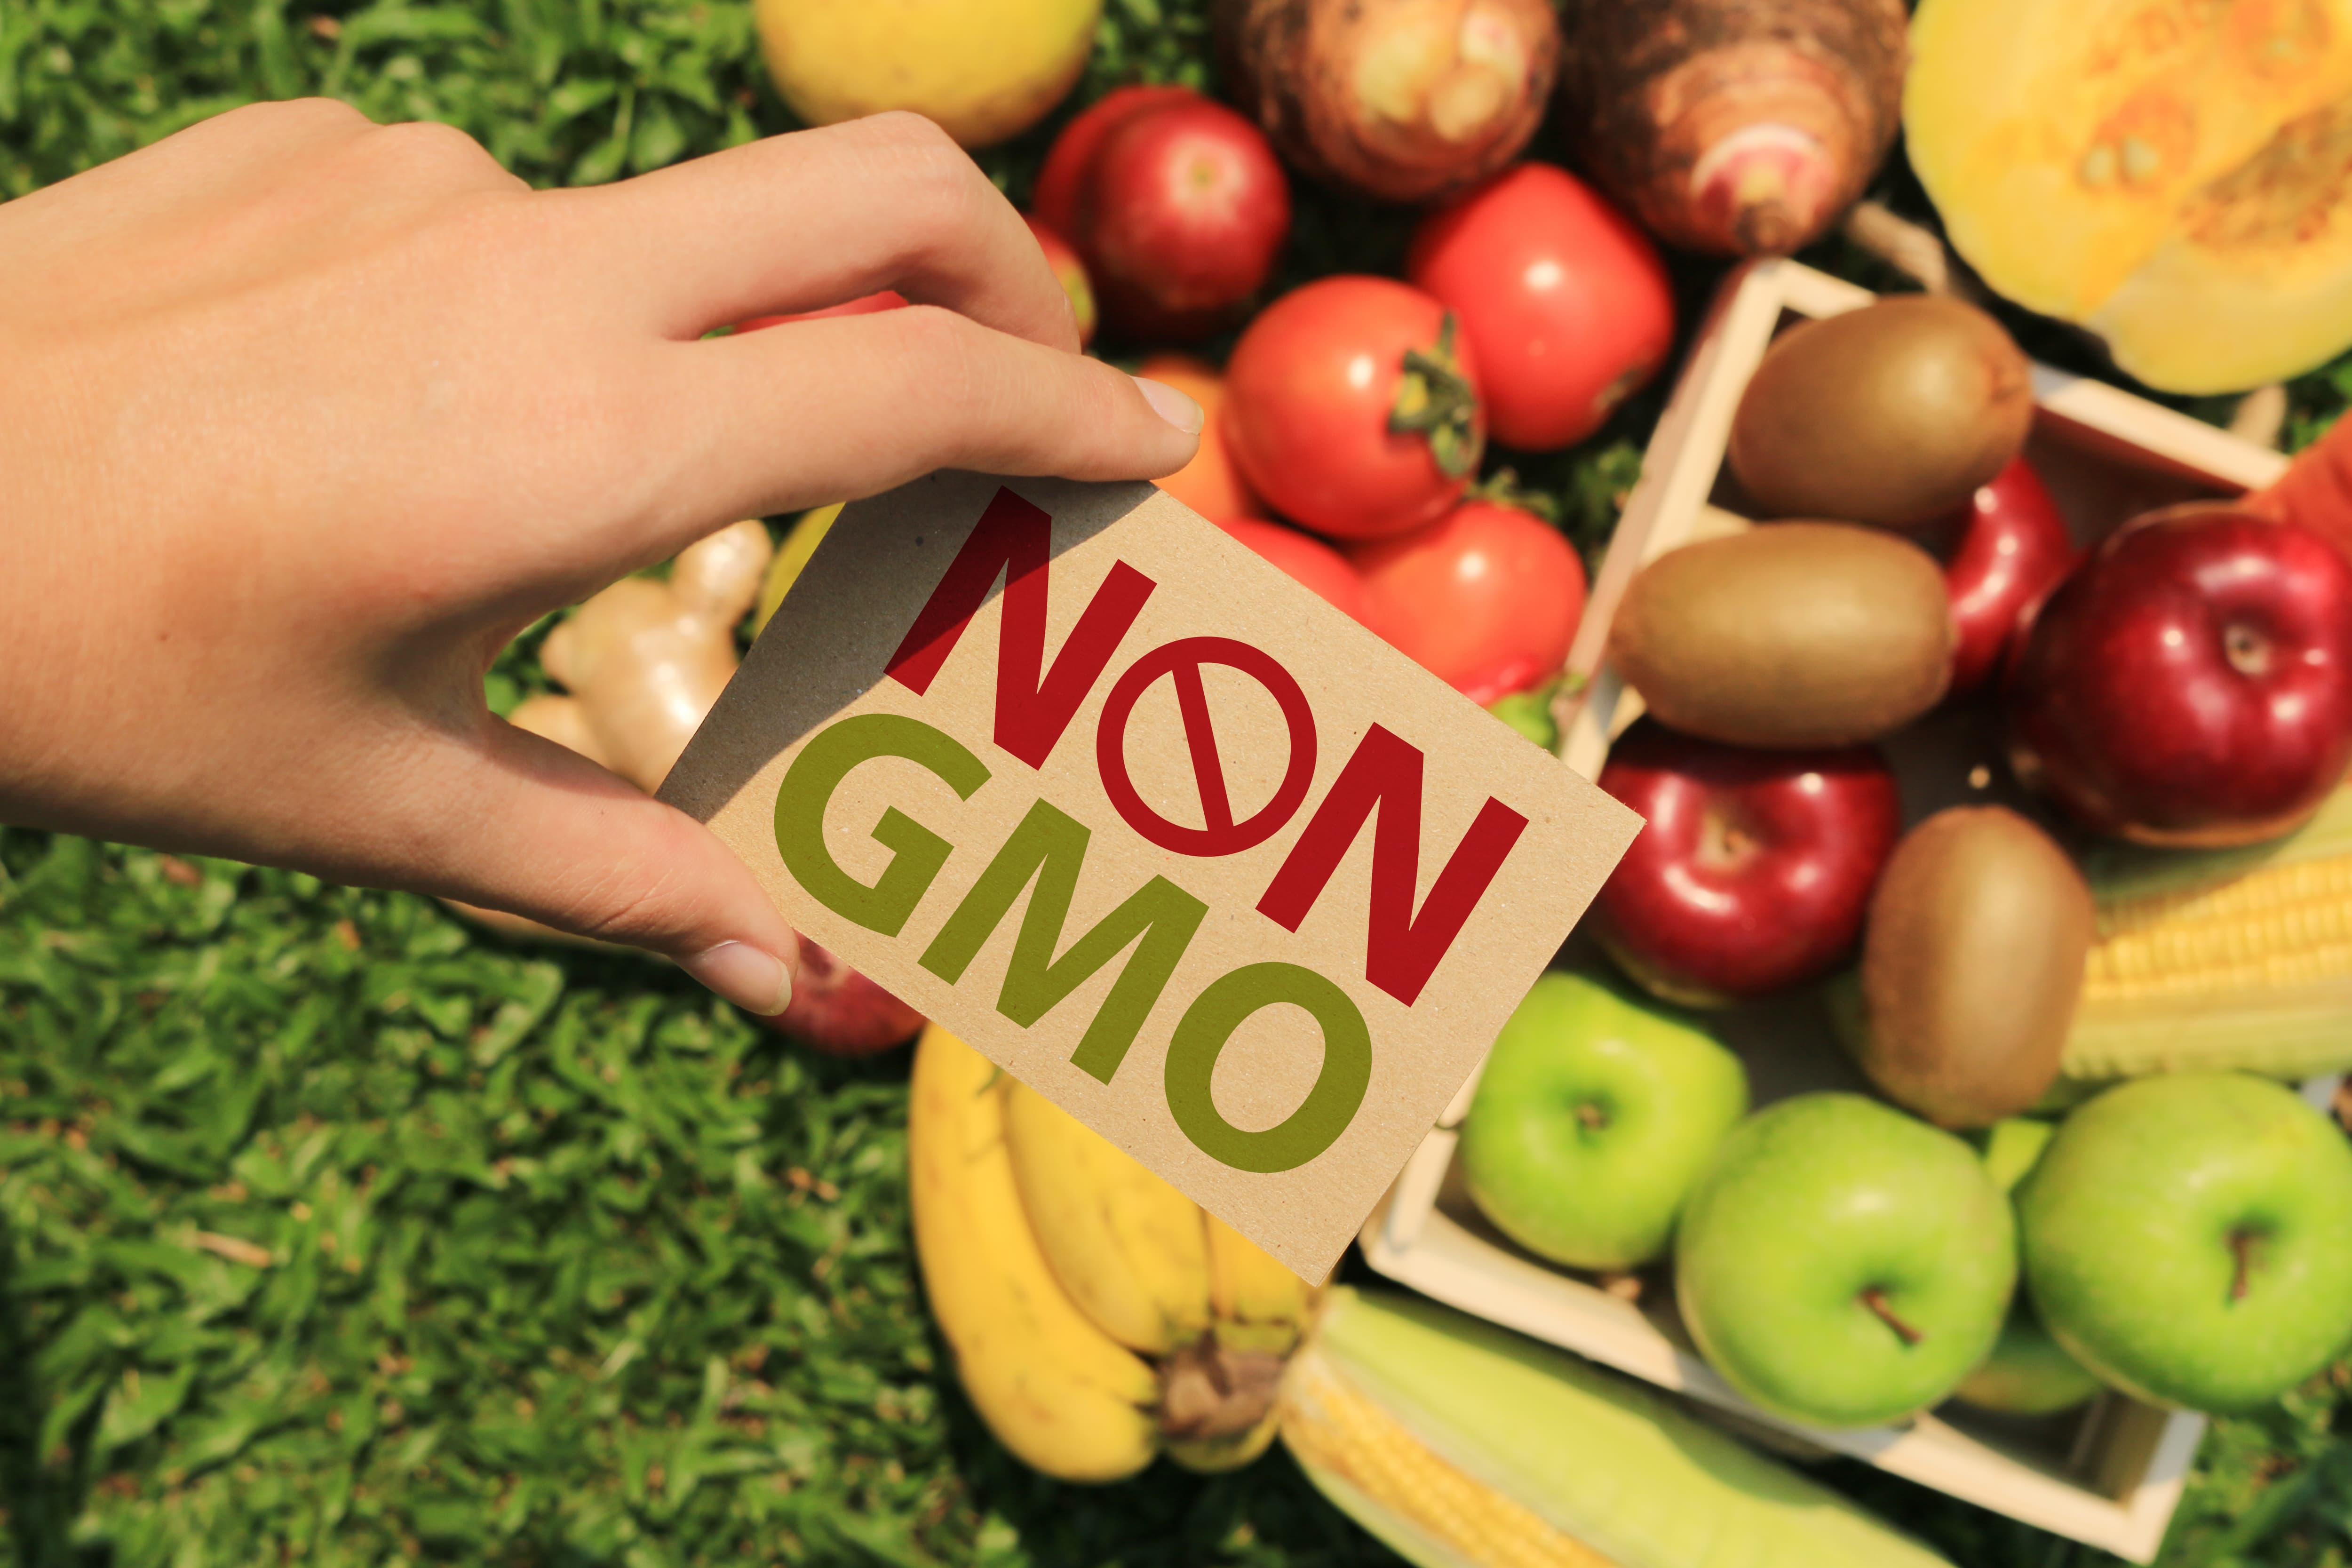 Non-GMO produce